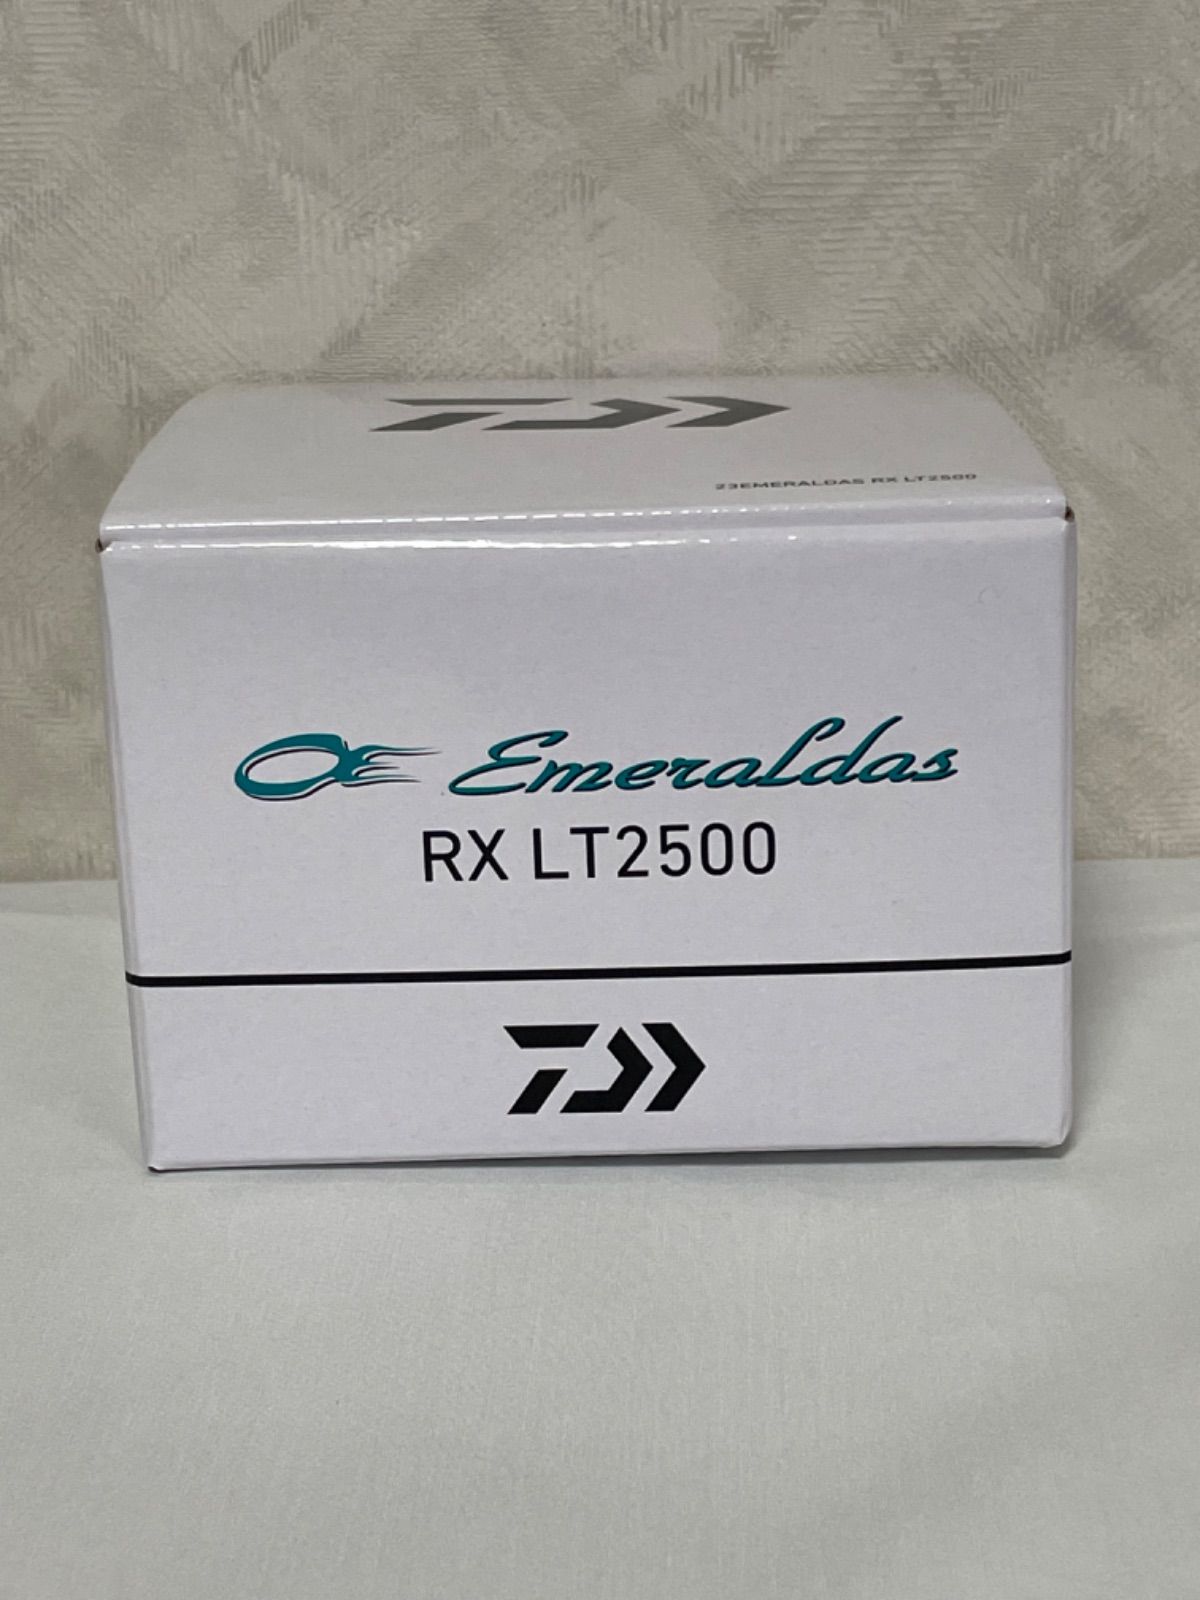 【新品】ダイワ エメラルダス RX LT2500 23年モデル スピニングリール